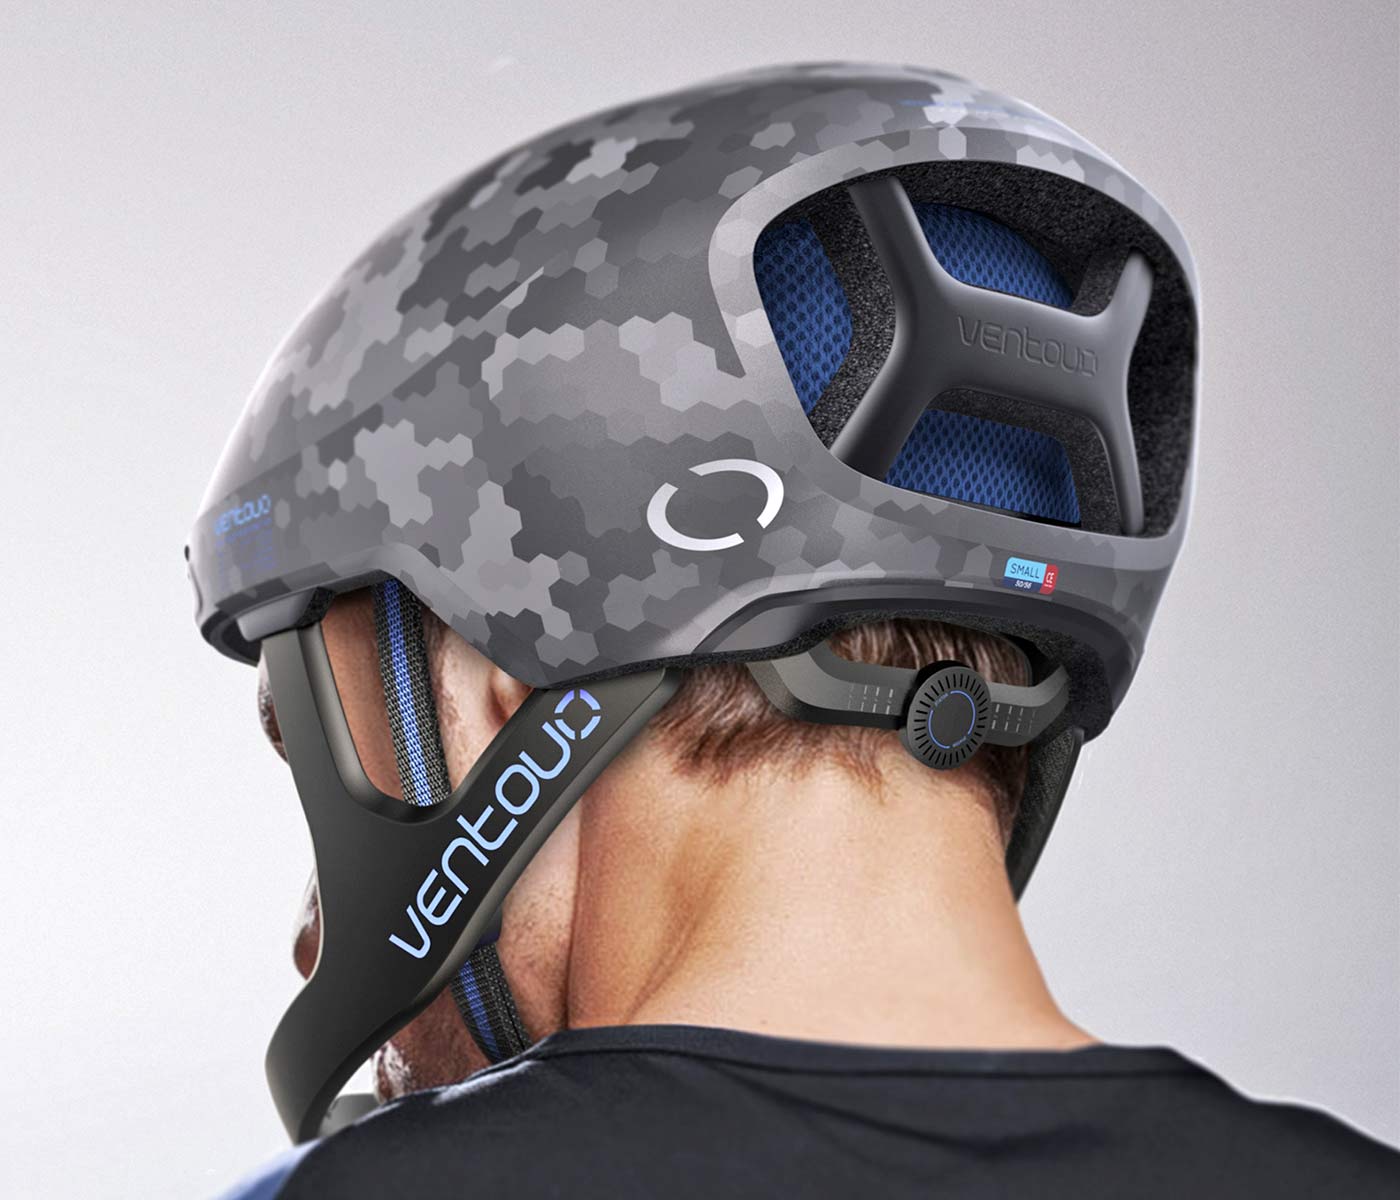 Ventoux aero full-face road bike helmet concept